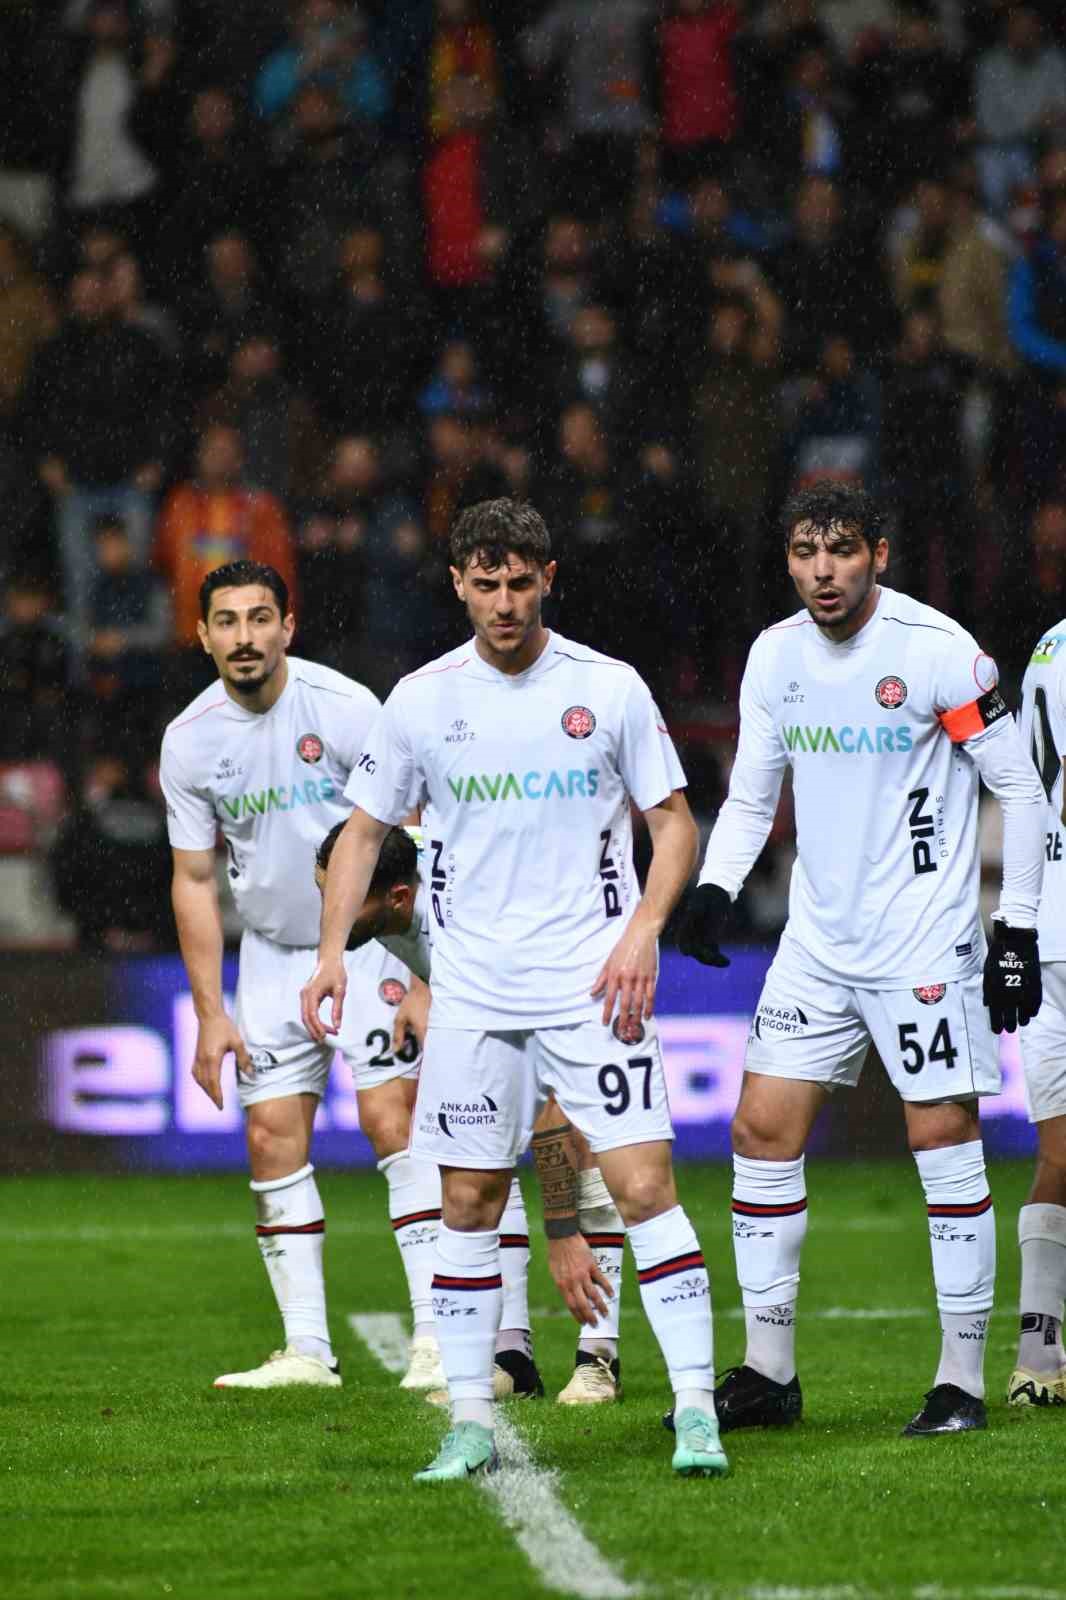 Trendyol Süper Lig: Kayserispor: 2 - Fatih Karagümrük: 2 (Maç sonucu)
